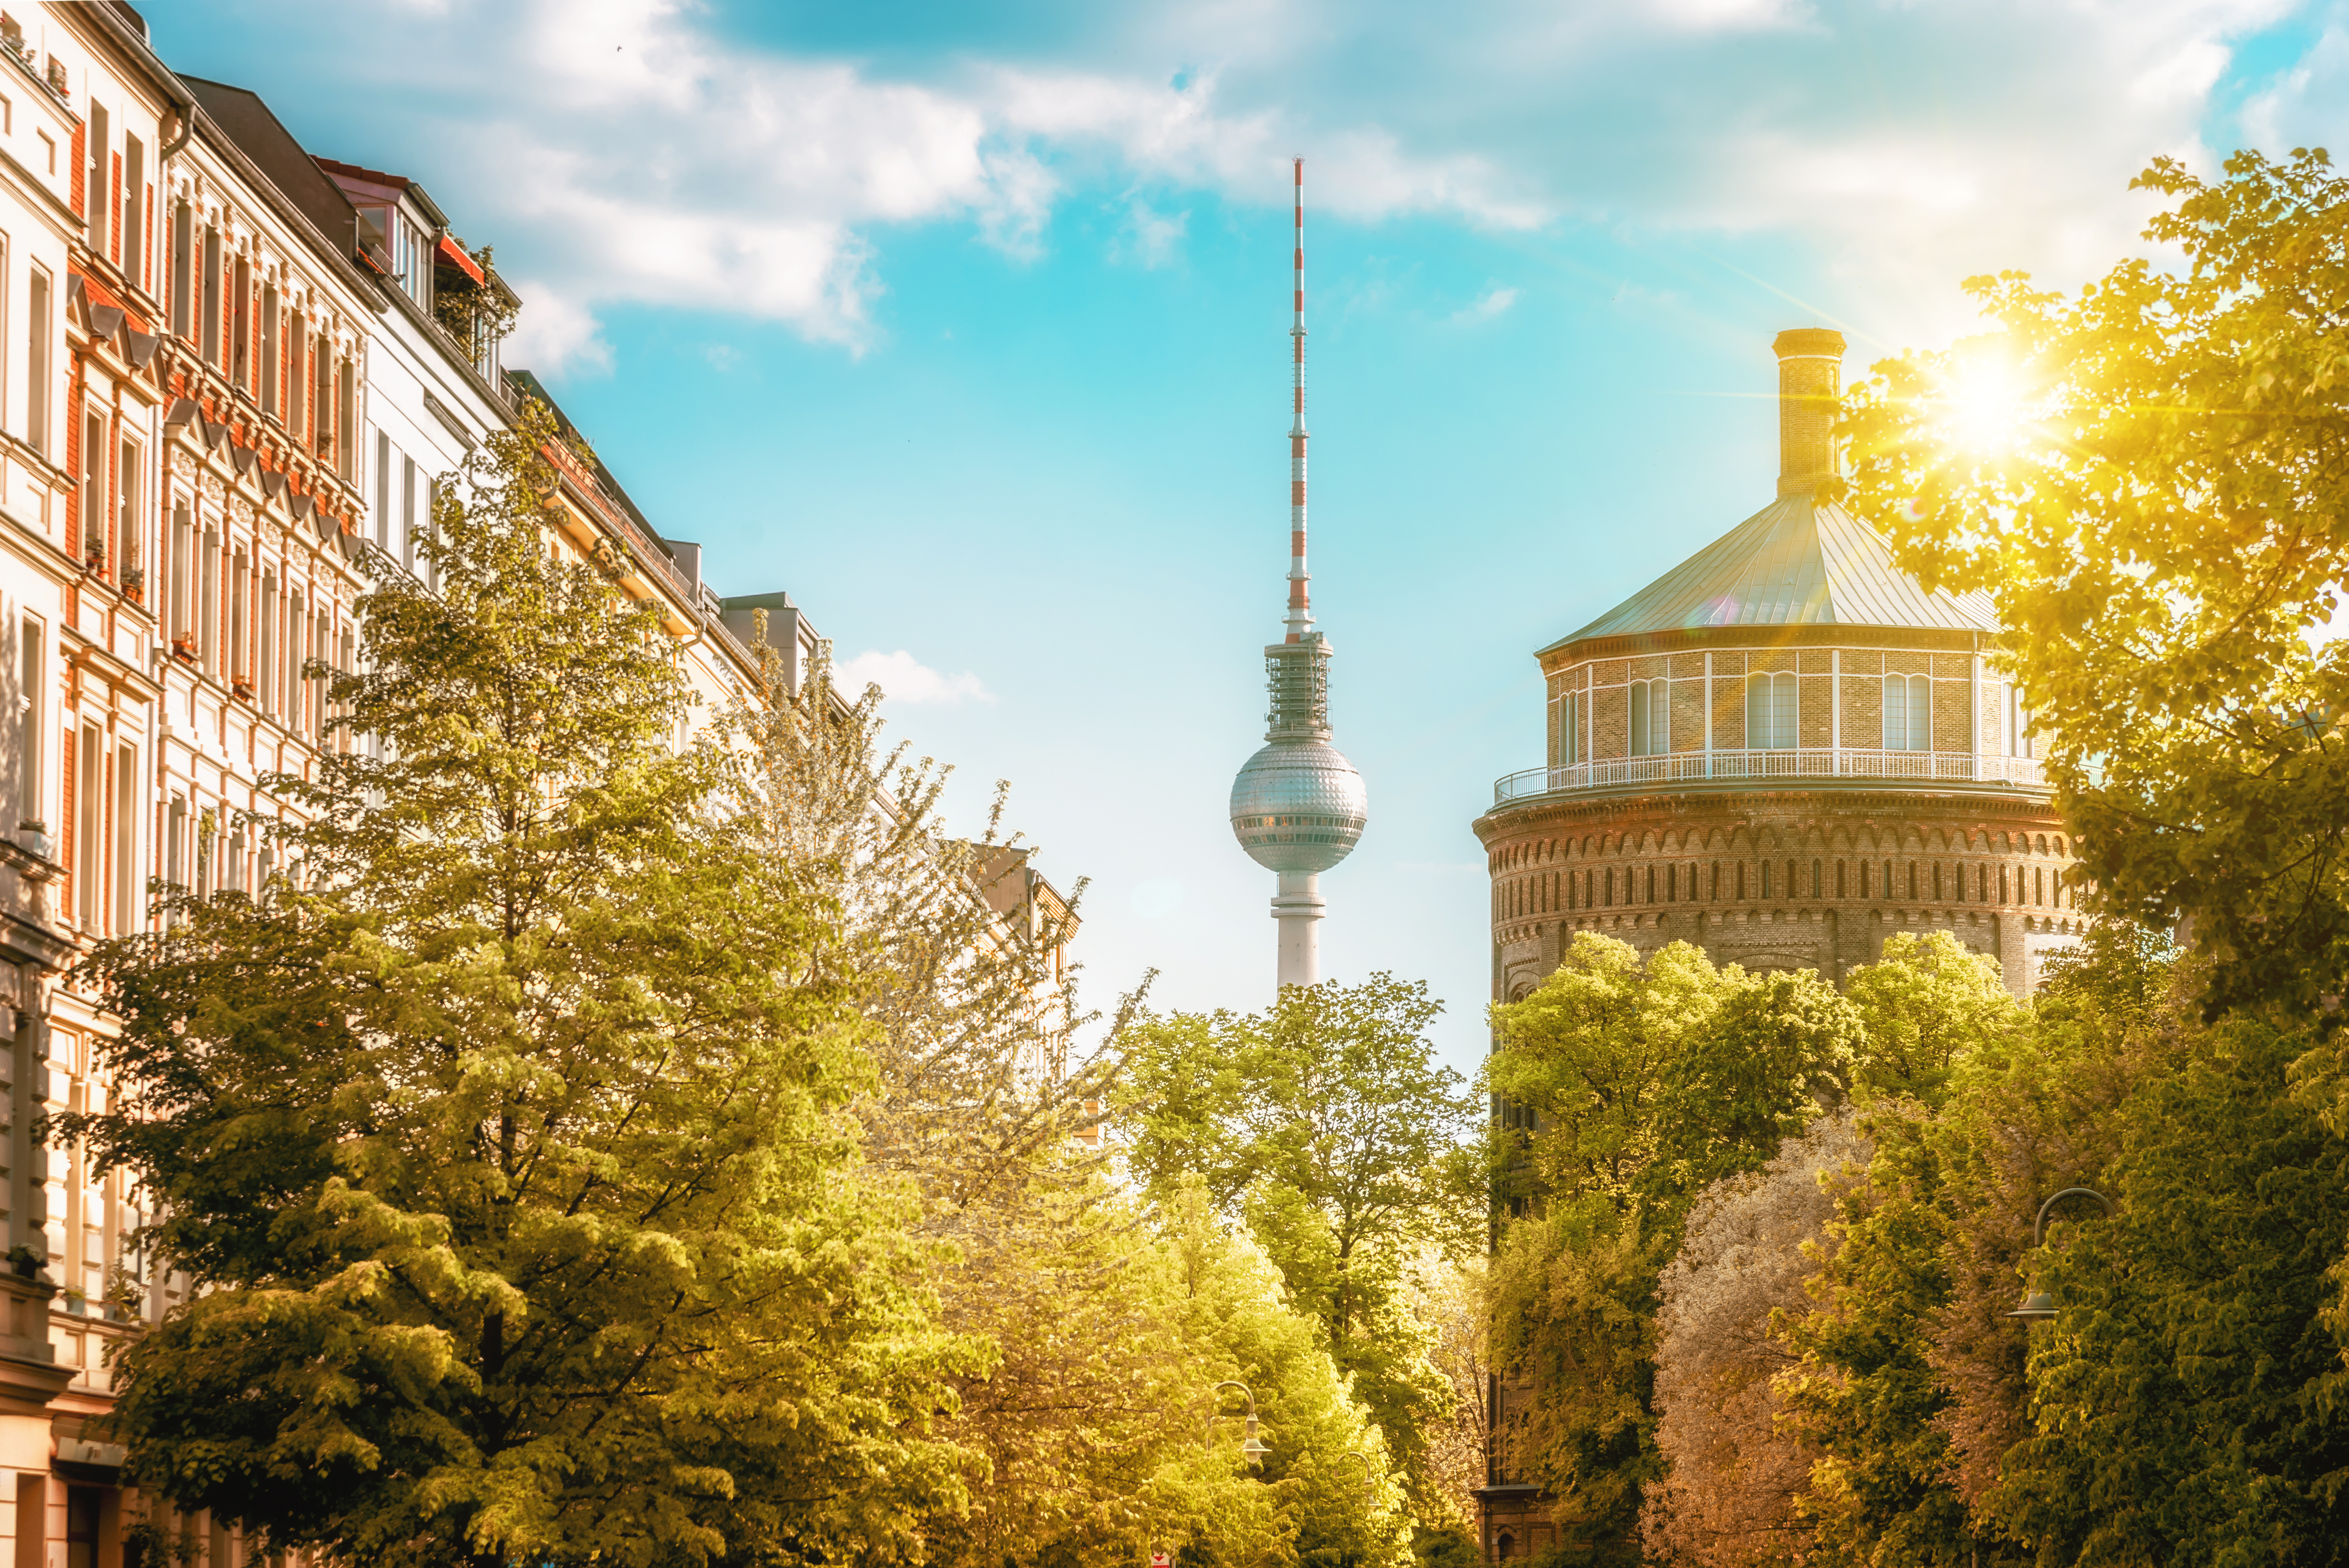 Panoramabild von Berlin mit dem Fernsehturm im Hintergrund golero via Getty Images